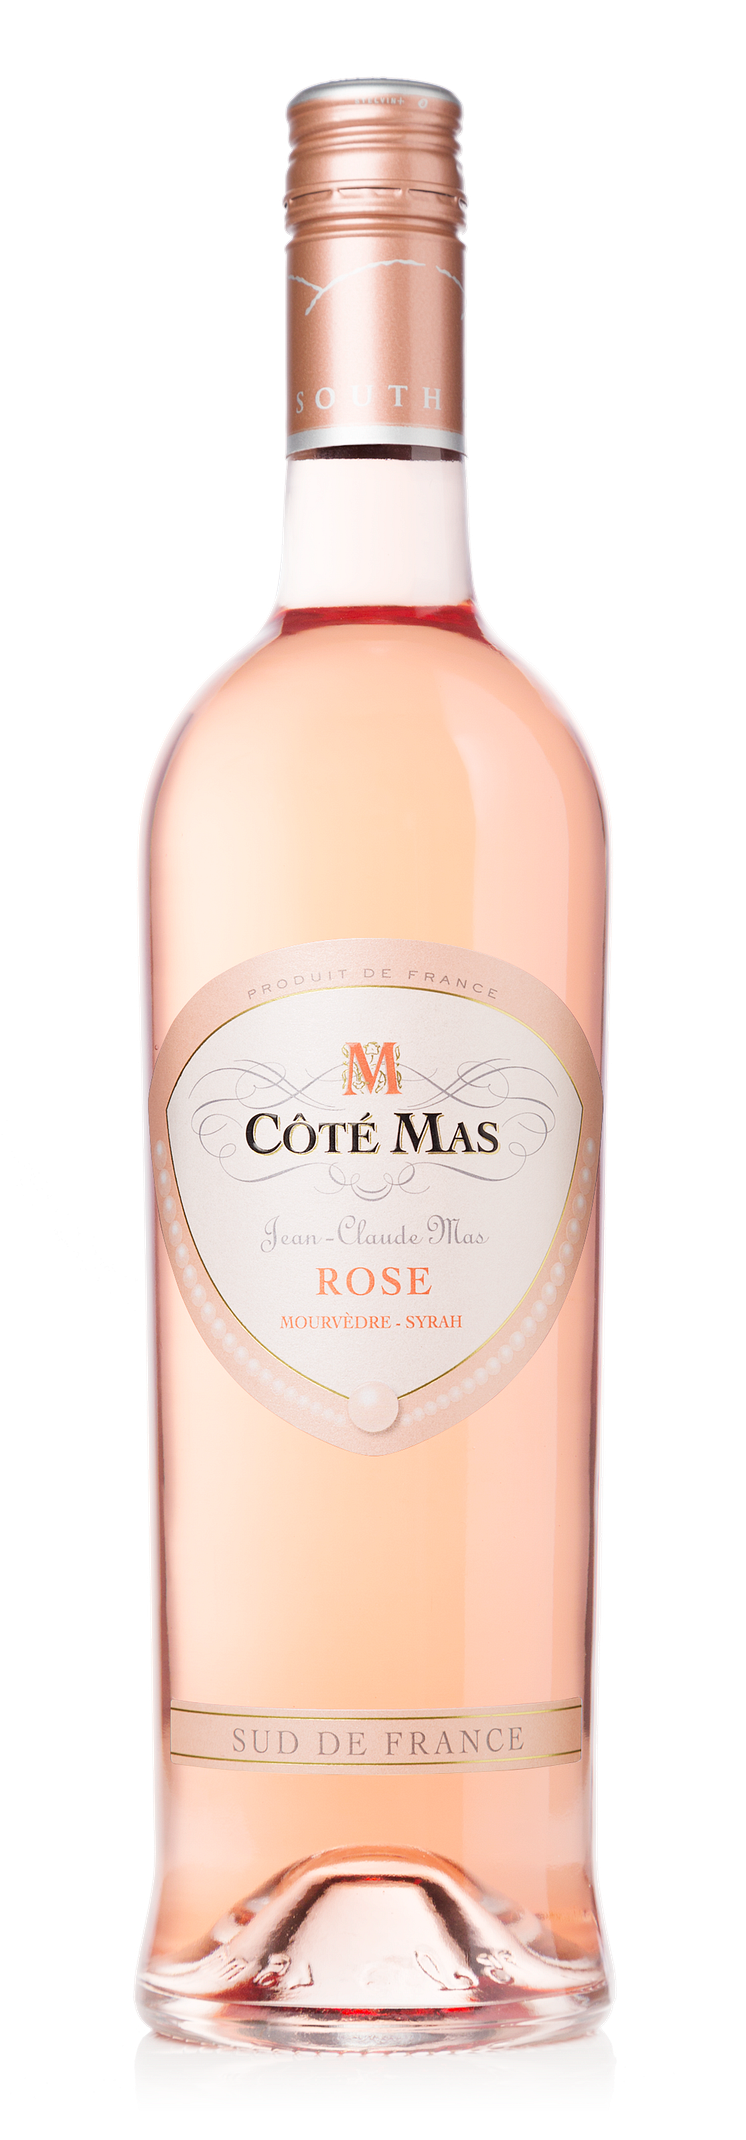 Cote-mas-rose-ljus-2020-PRESS.png